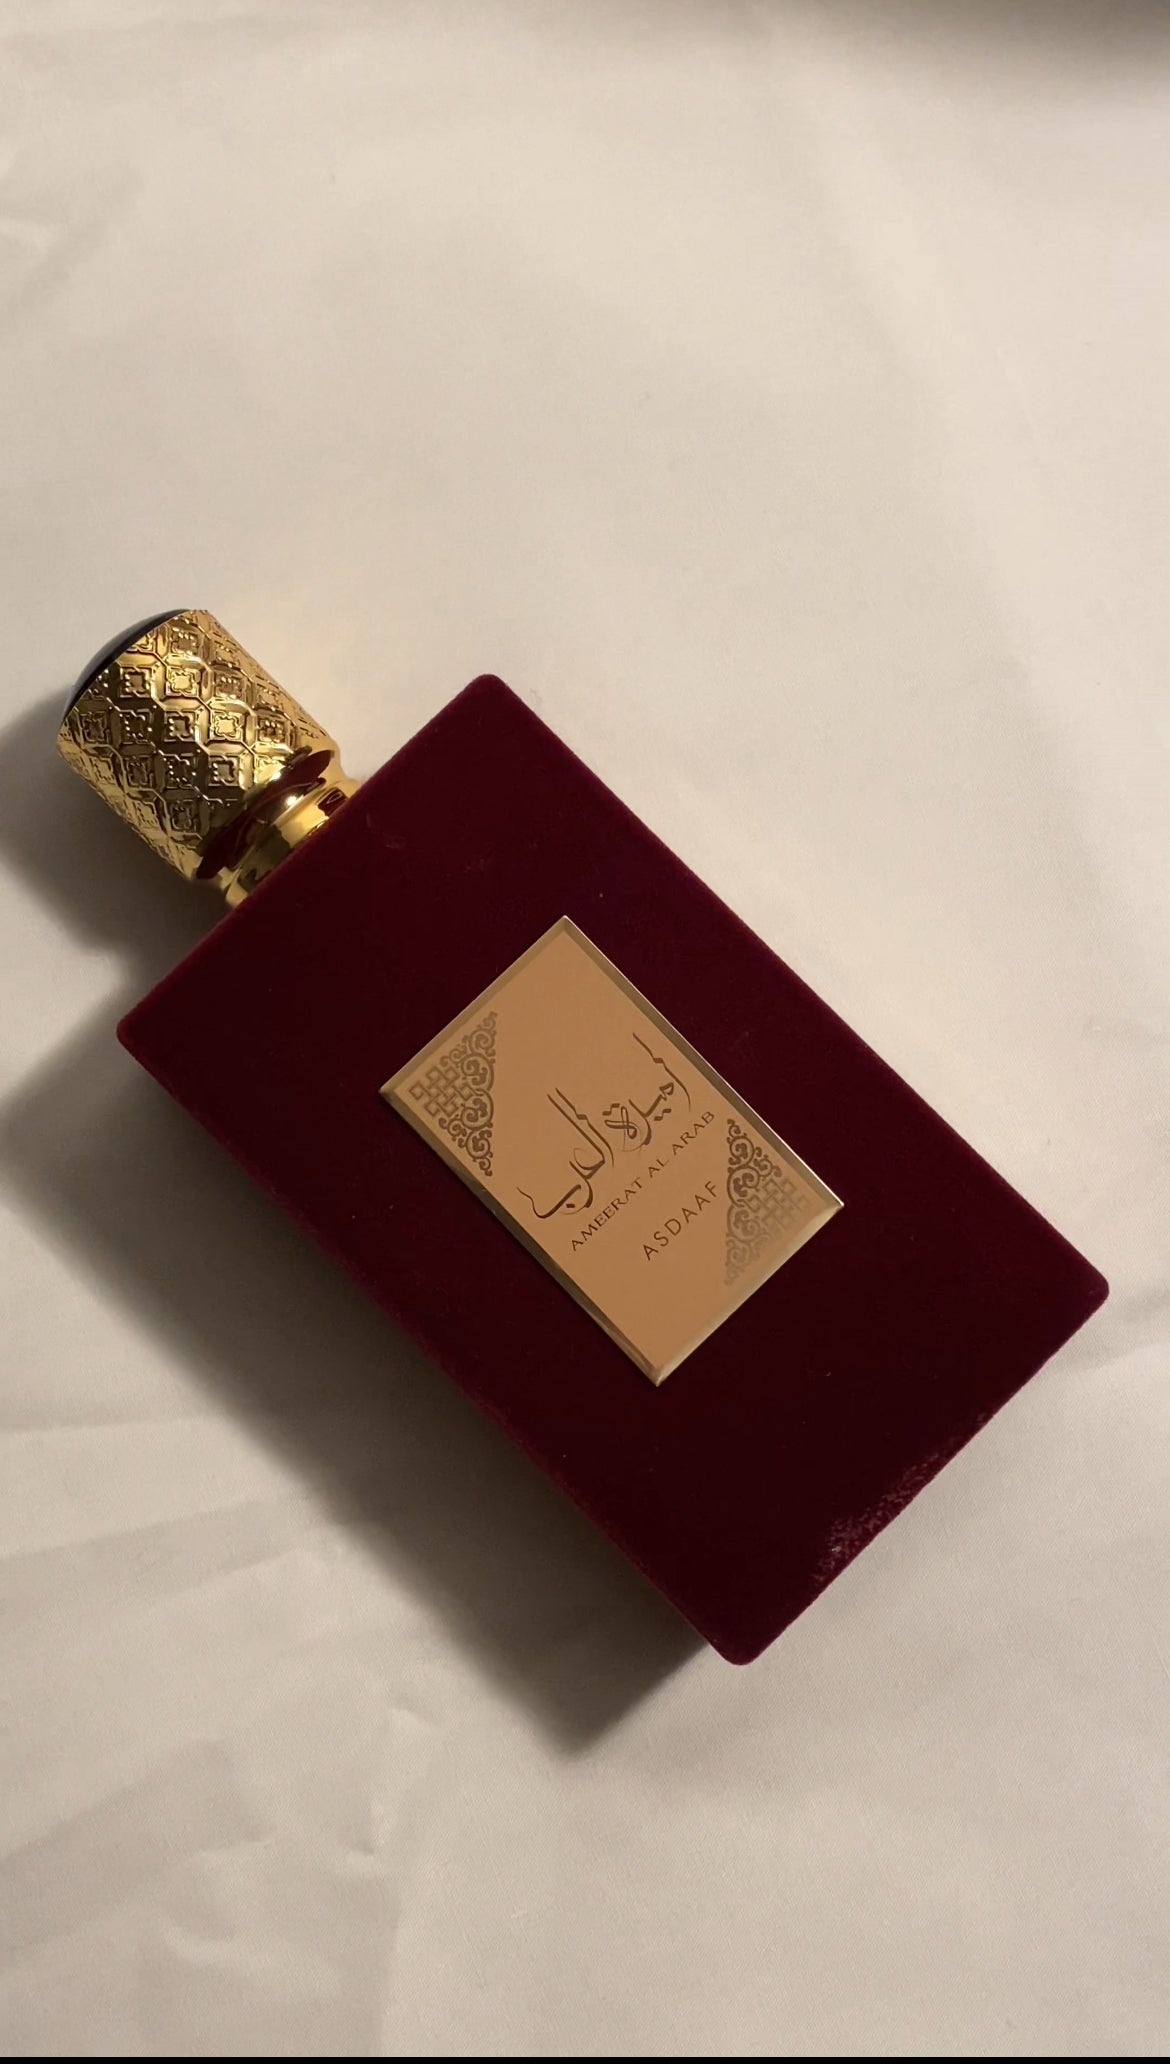 Ameerat Al Arab - Parfum pour femme de la maison orientale Asdaaf